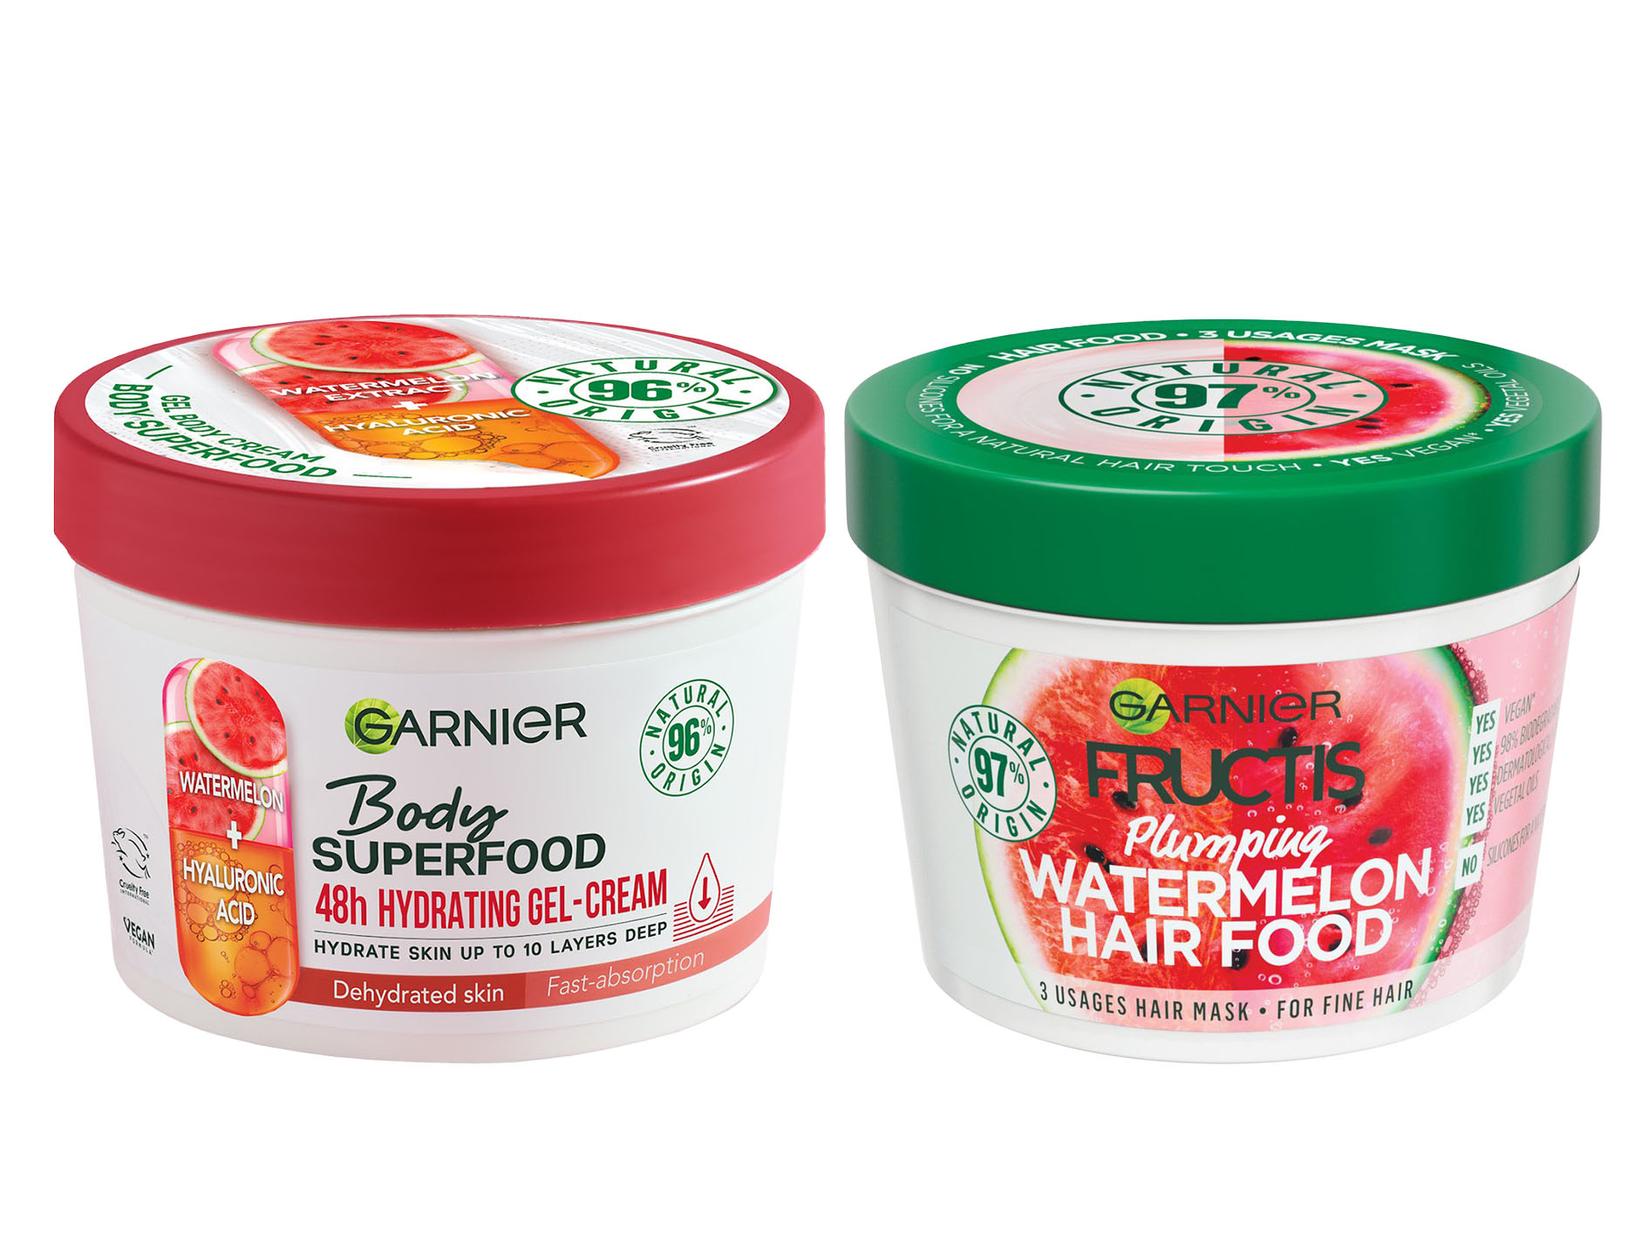 GARNIER Body Superfood Krema za telo Watermelon 380ml + GARNIER Fructis Hair Food Maska za kosu Watermelon 390ml